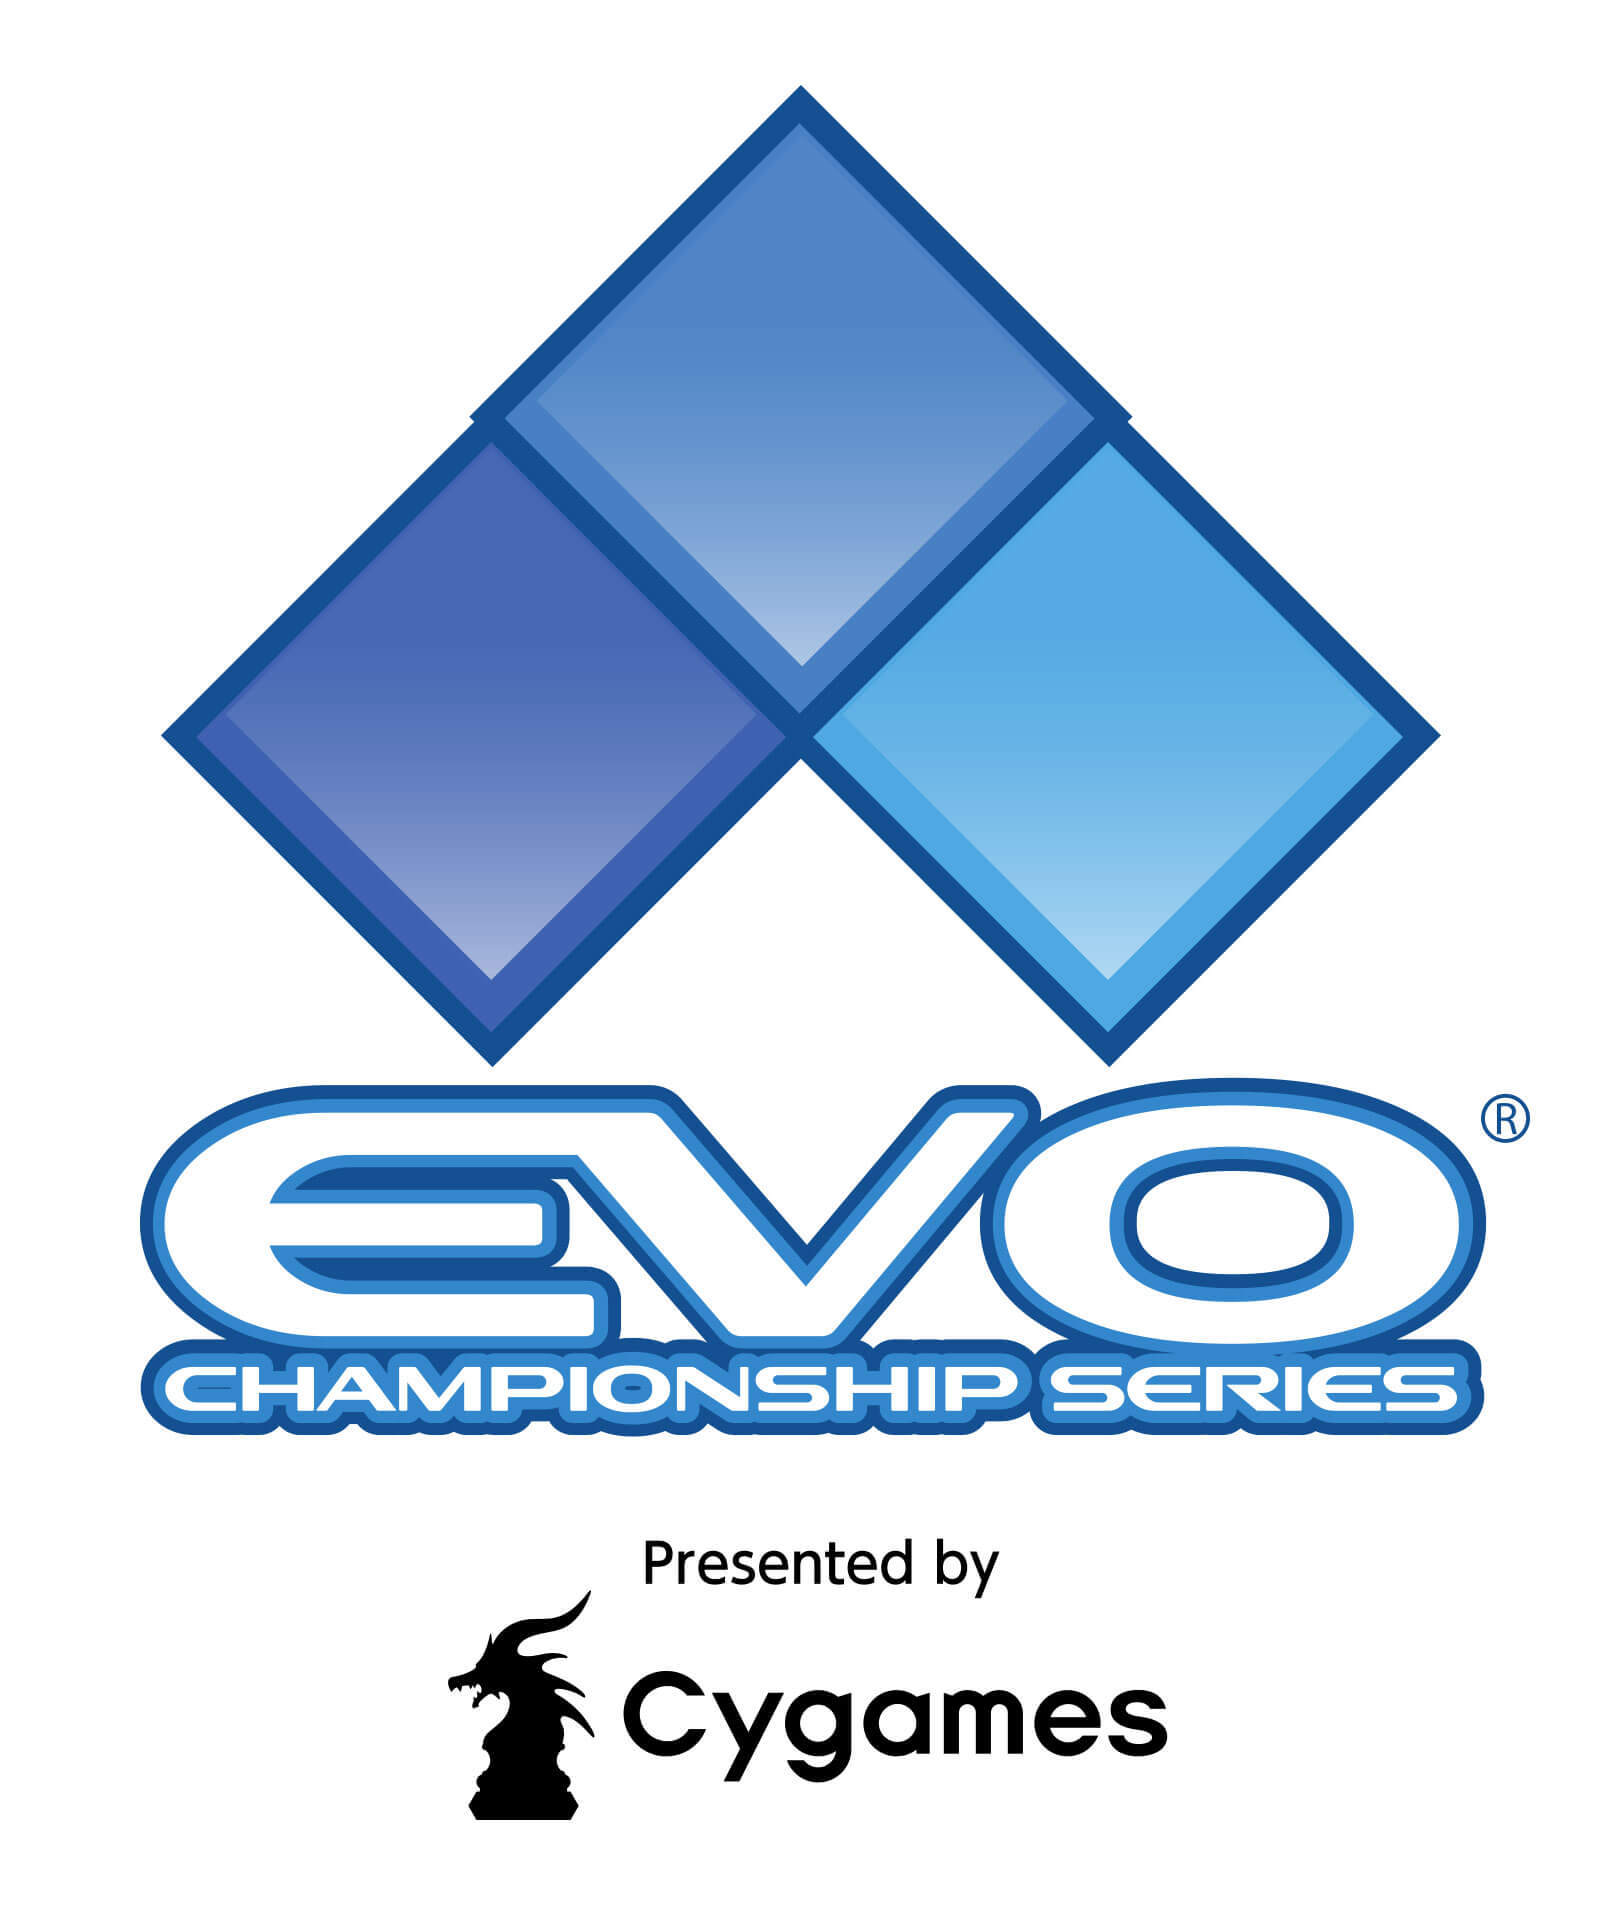 Cygamesが世界最大規模の格闘ゲーム大会 Evo 18 のオフィシャルスポンサーとして協賛決定 ニコニコニュース